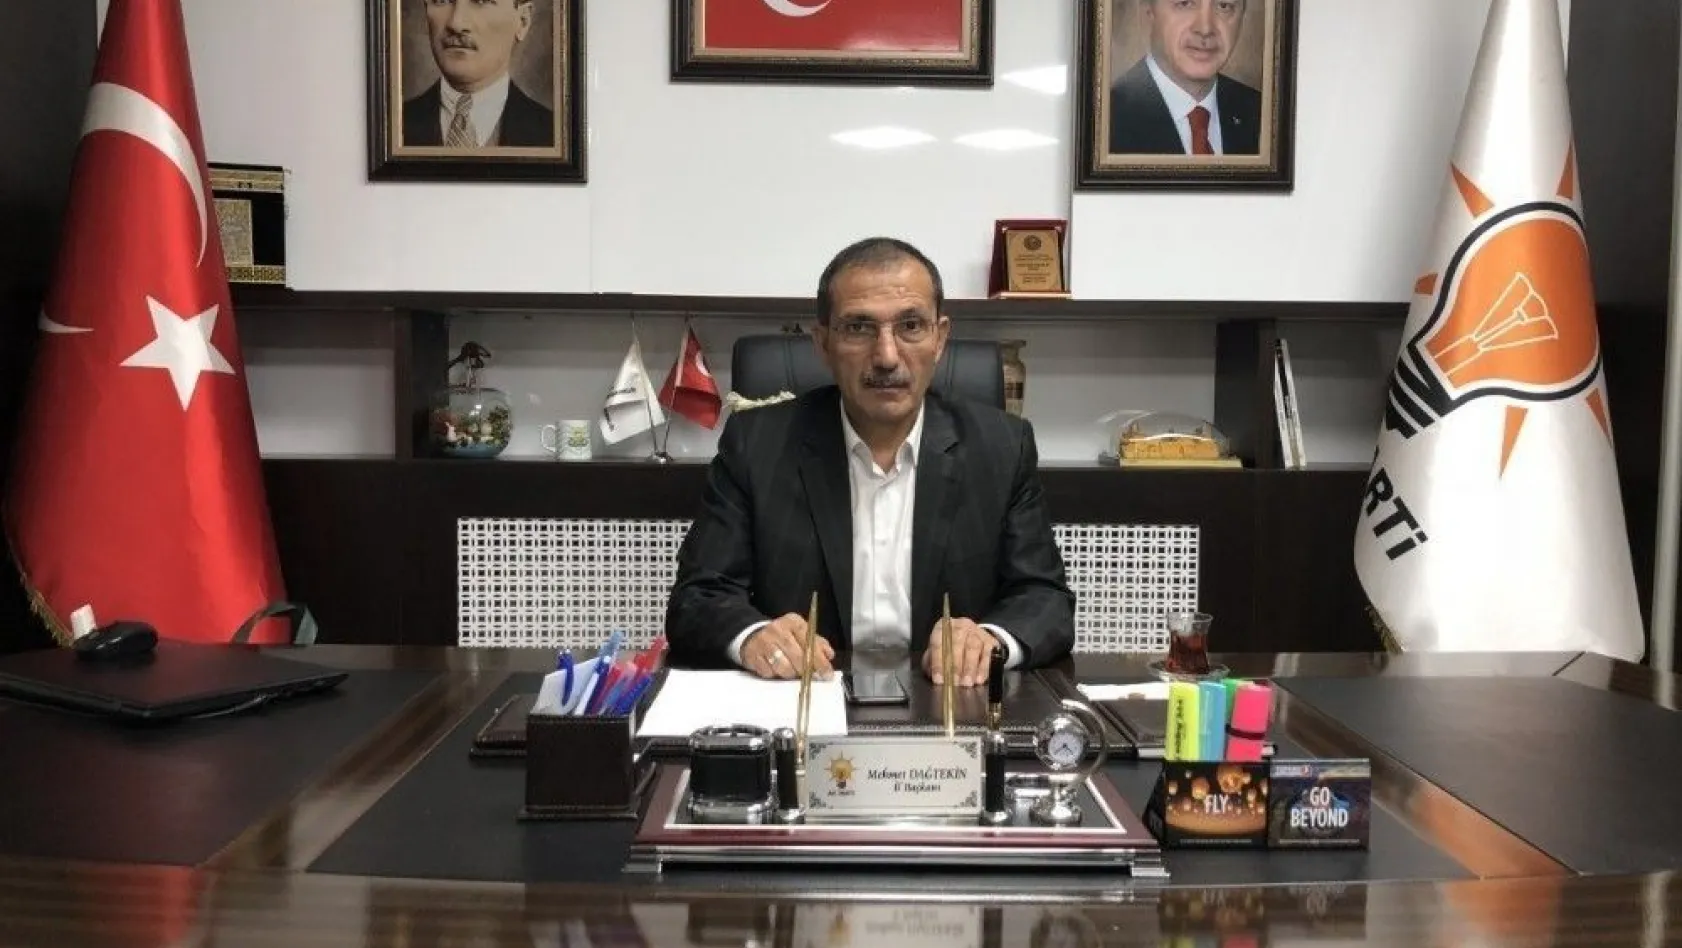 AK Partide belediye başkanlığı aday adaylığı başvuru süresi uzatıldı
